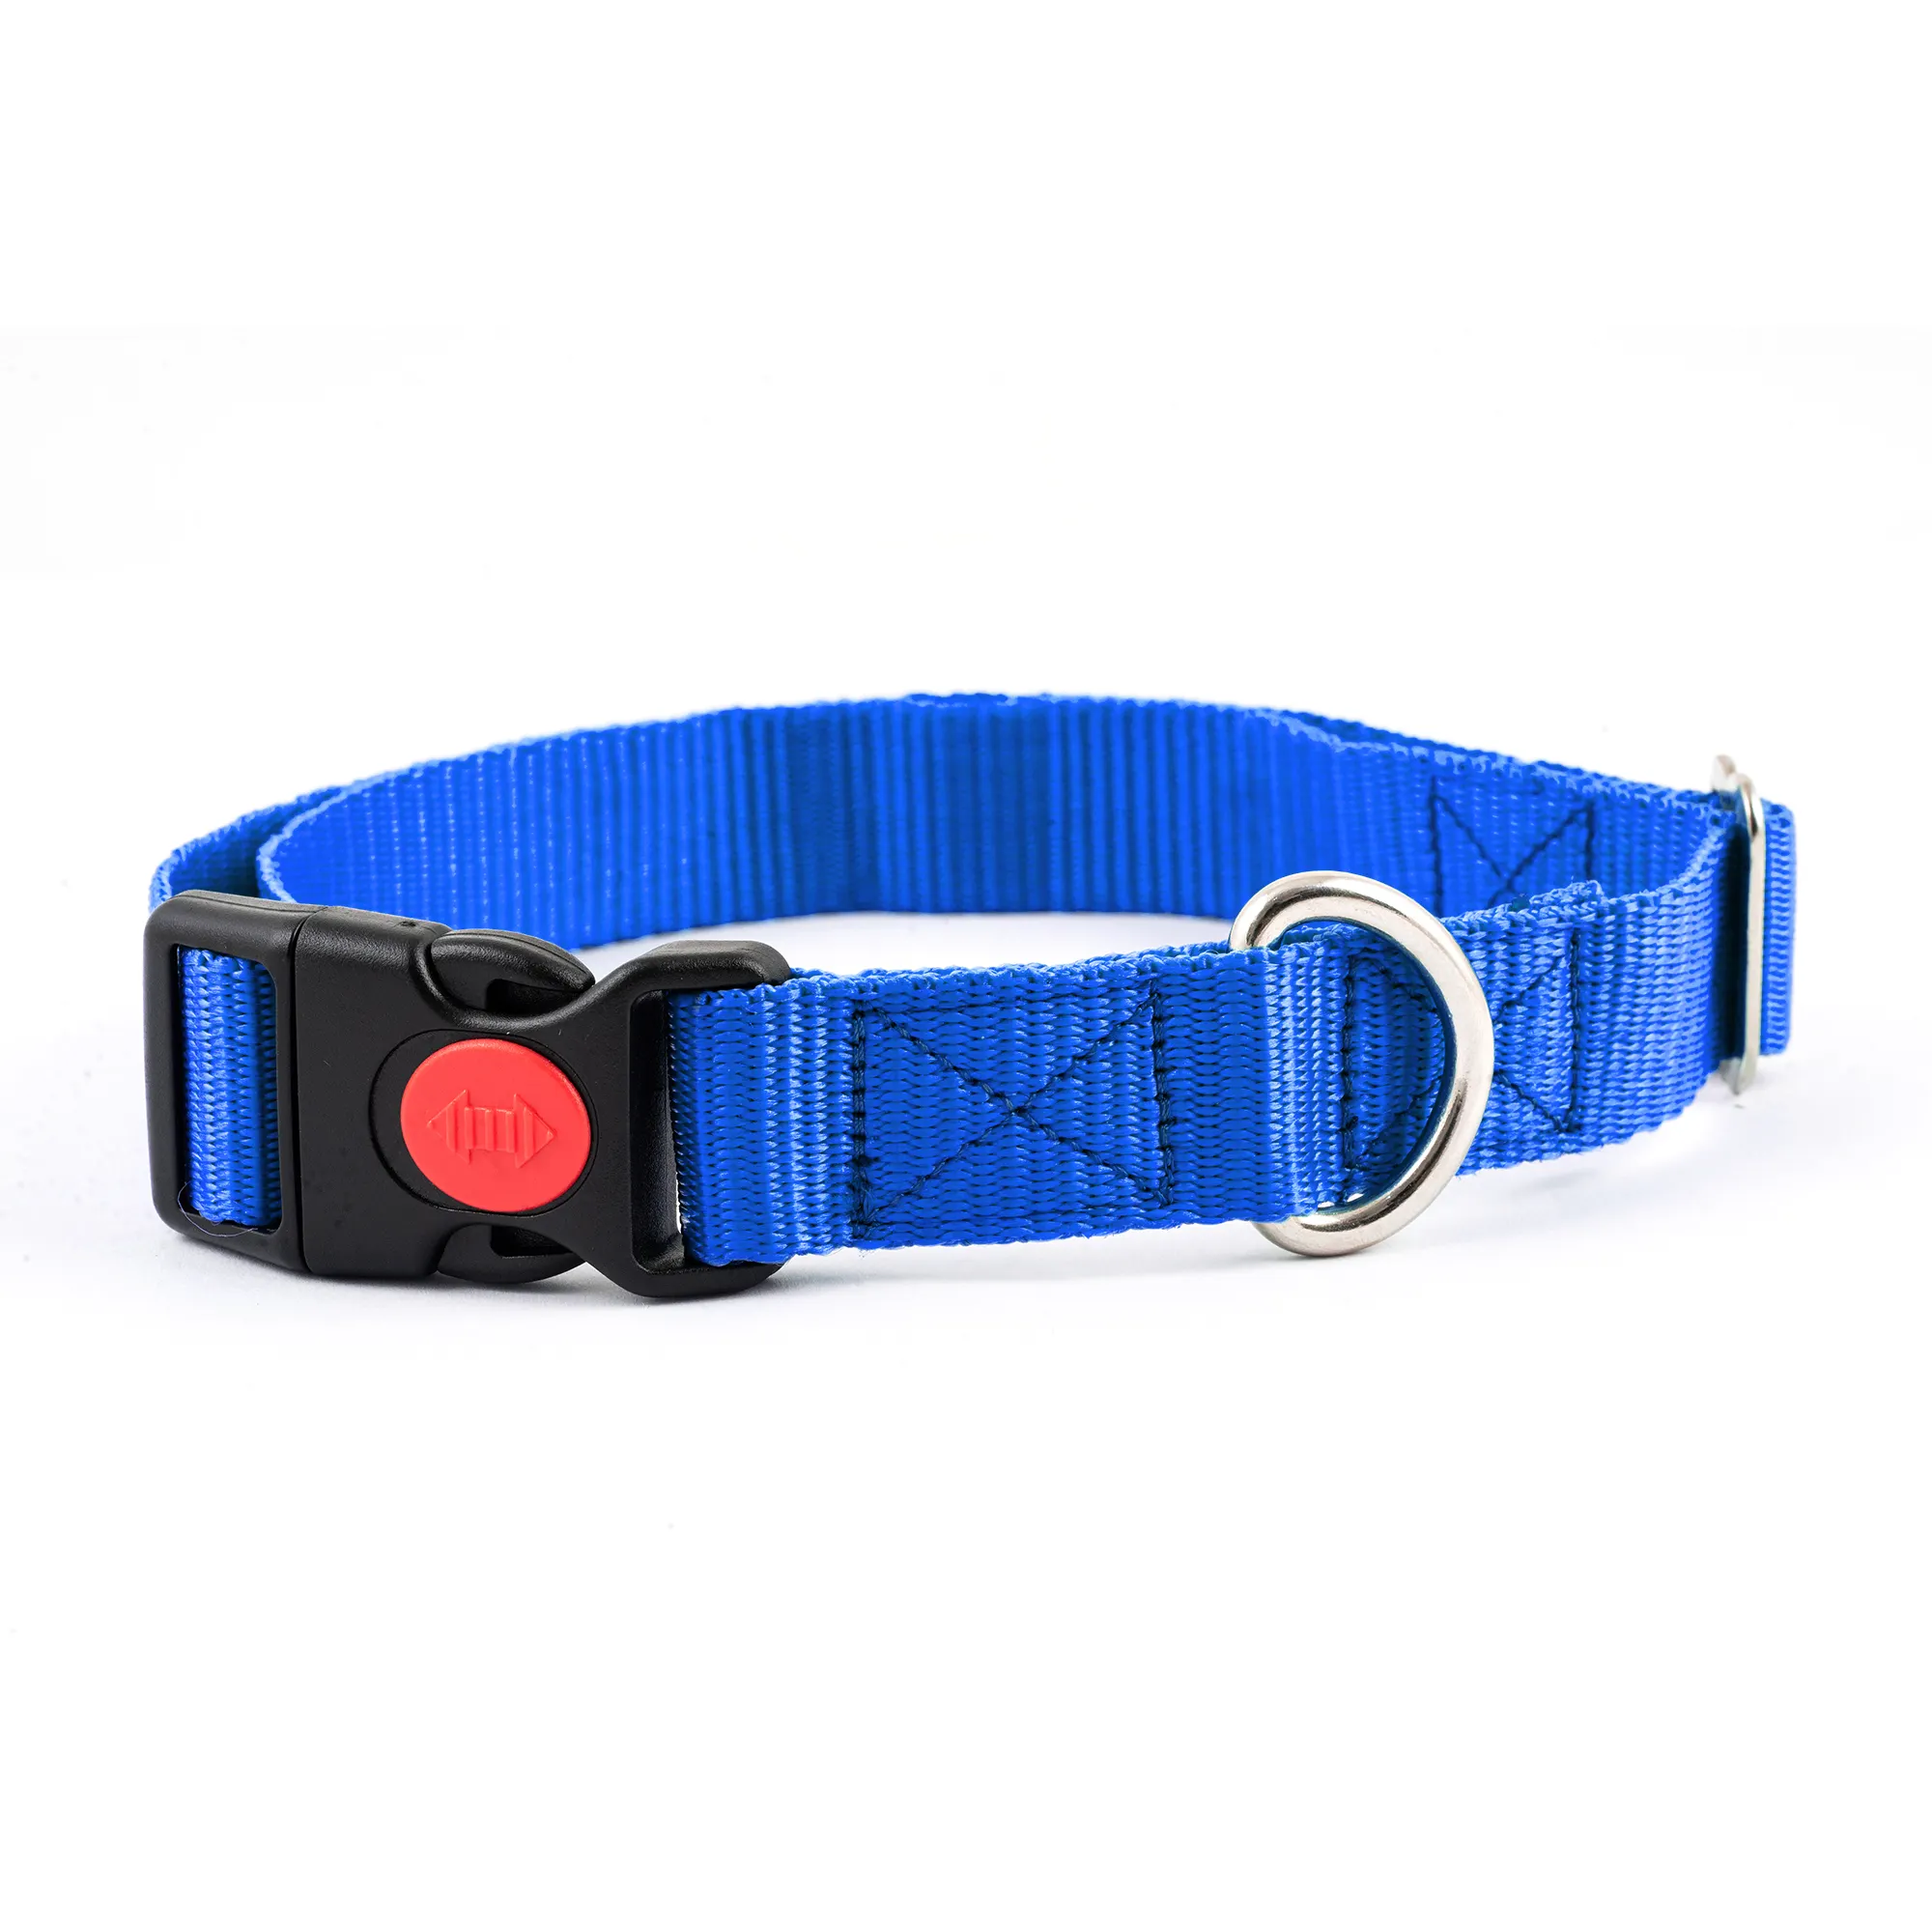 Tüm boyutları için köpek tasması ile özel naylon köpek tasması s sevgili pet için 38-63 cm ve hızlı açma düğmesi, kraliyet mavi